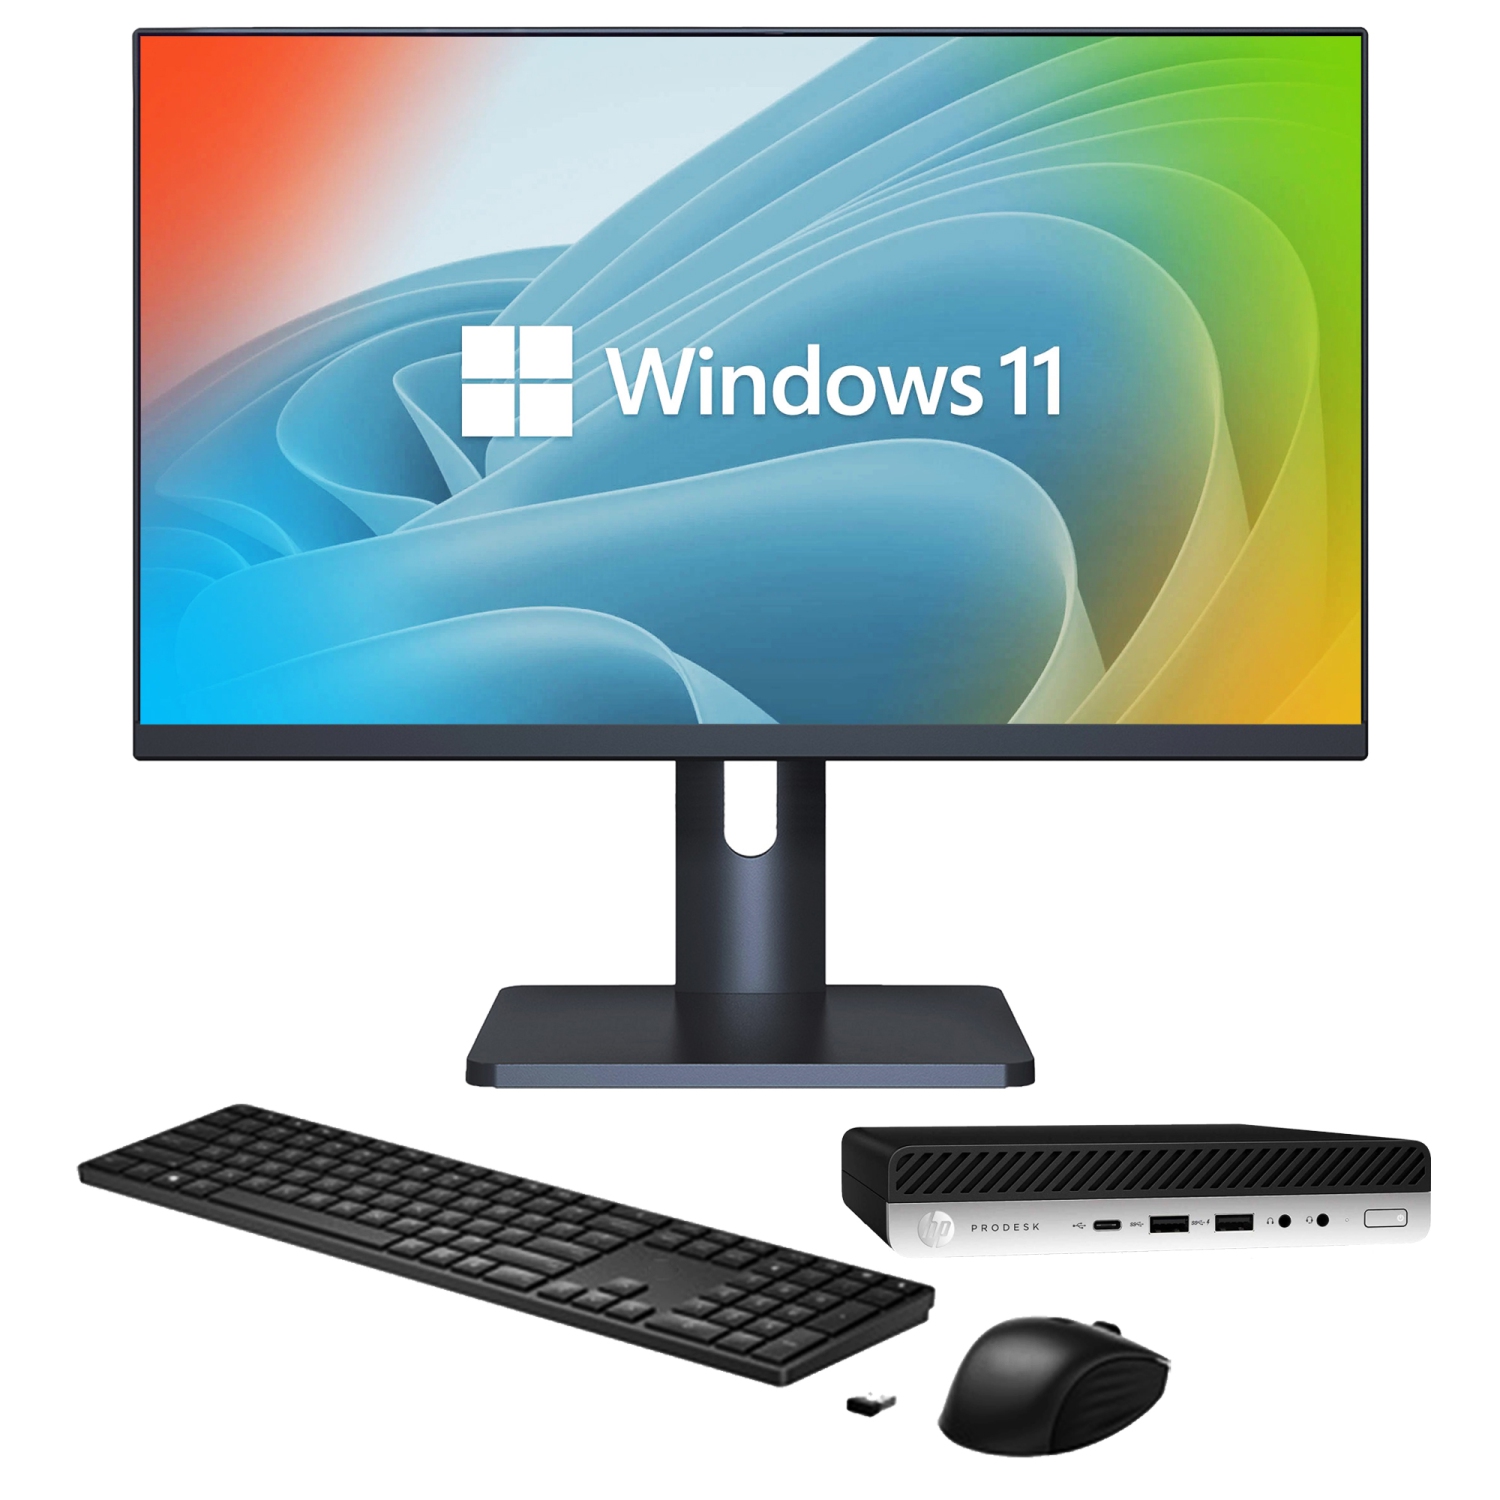 Refurbished (Good) - HP ProDesk 600 G4 Desktop Mini Business PC | Intel Core i5-8500T 8th Gen Processor | 8GB RAM | 256GB SSD | Windows 11 Pro - New 27 inch Monitor